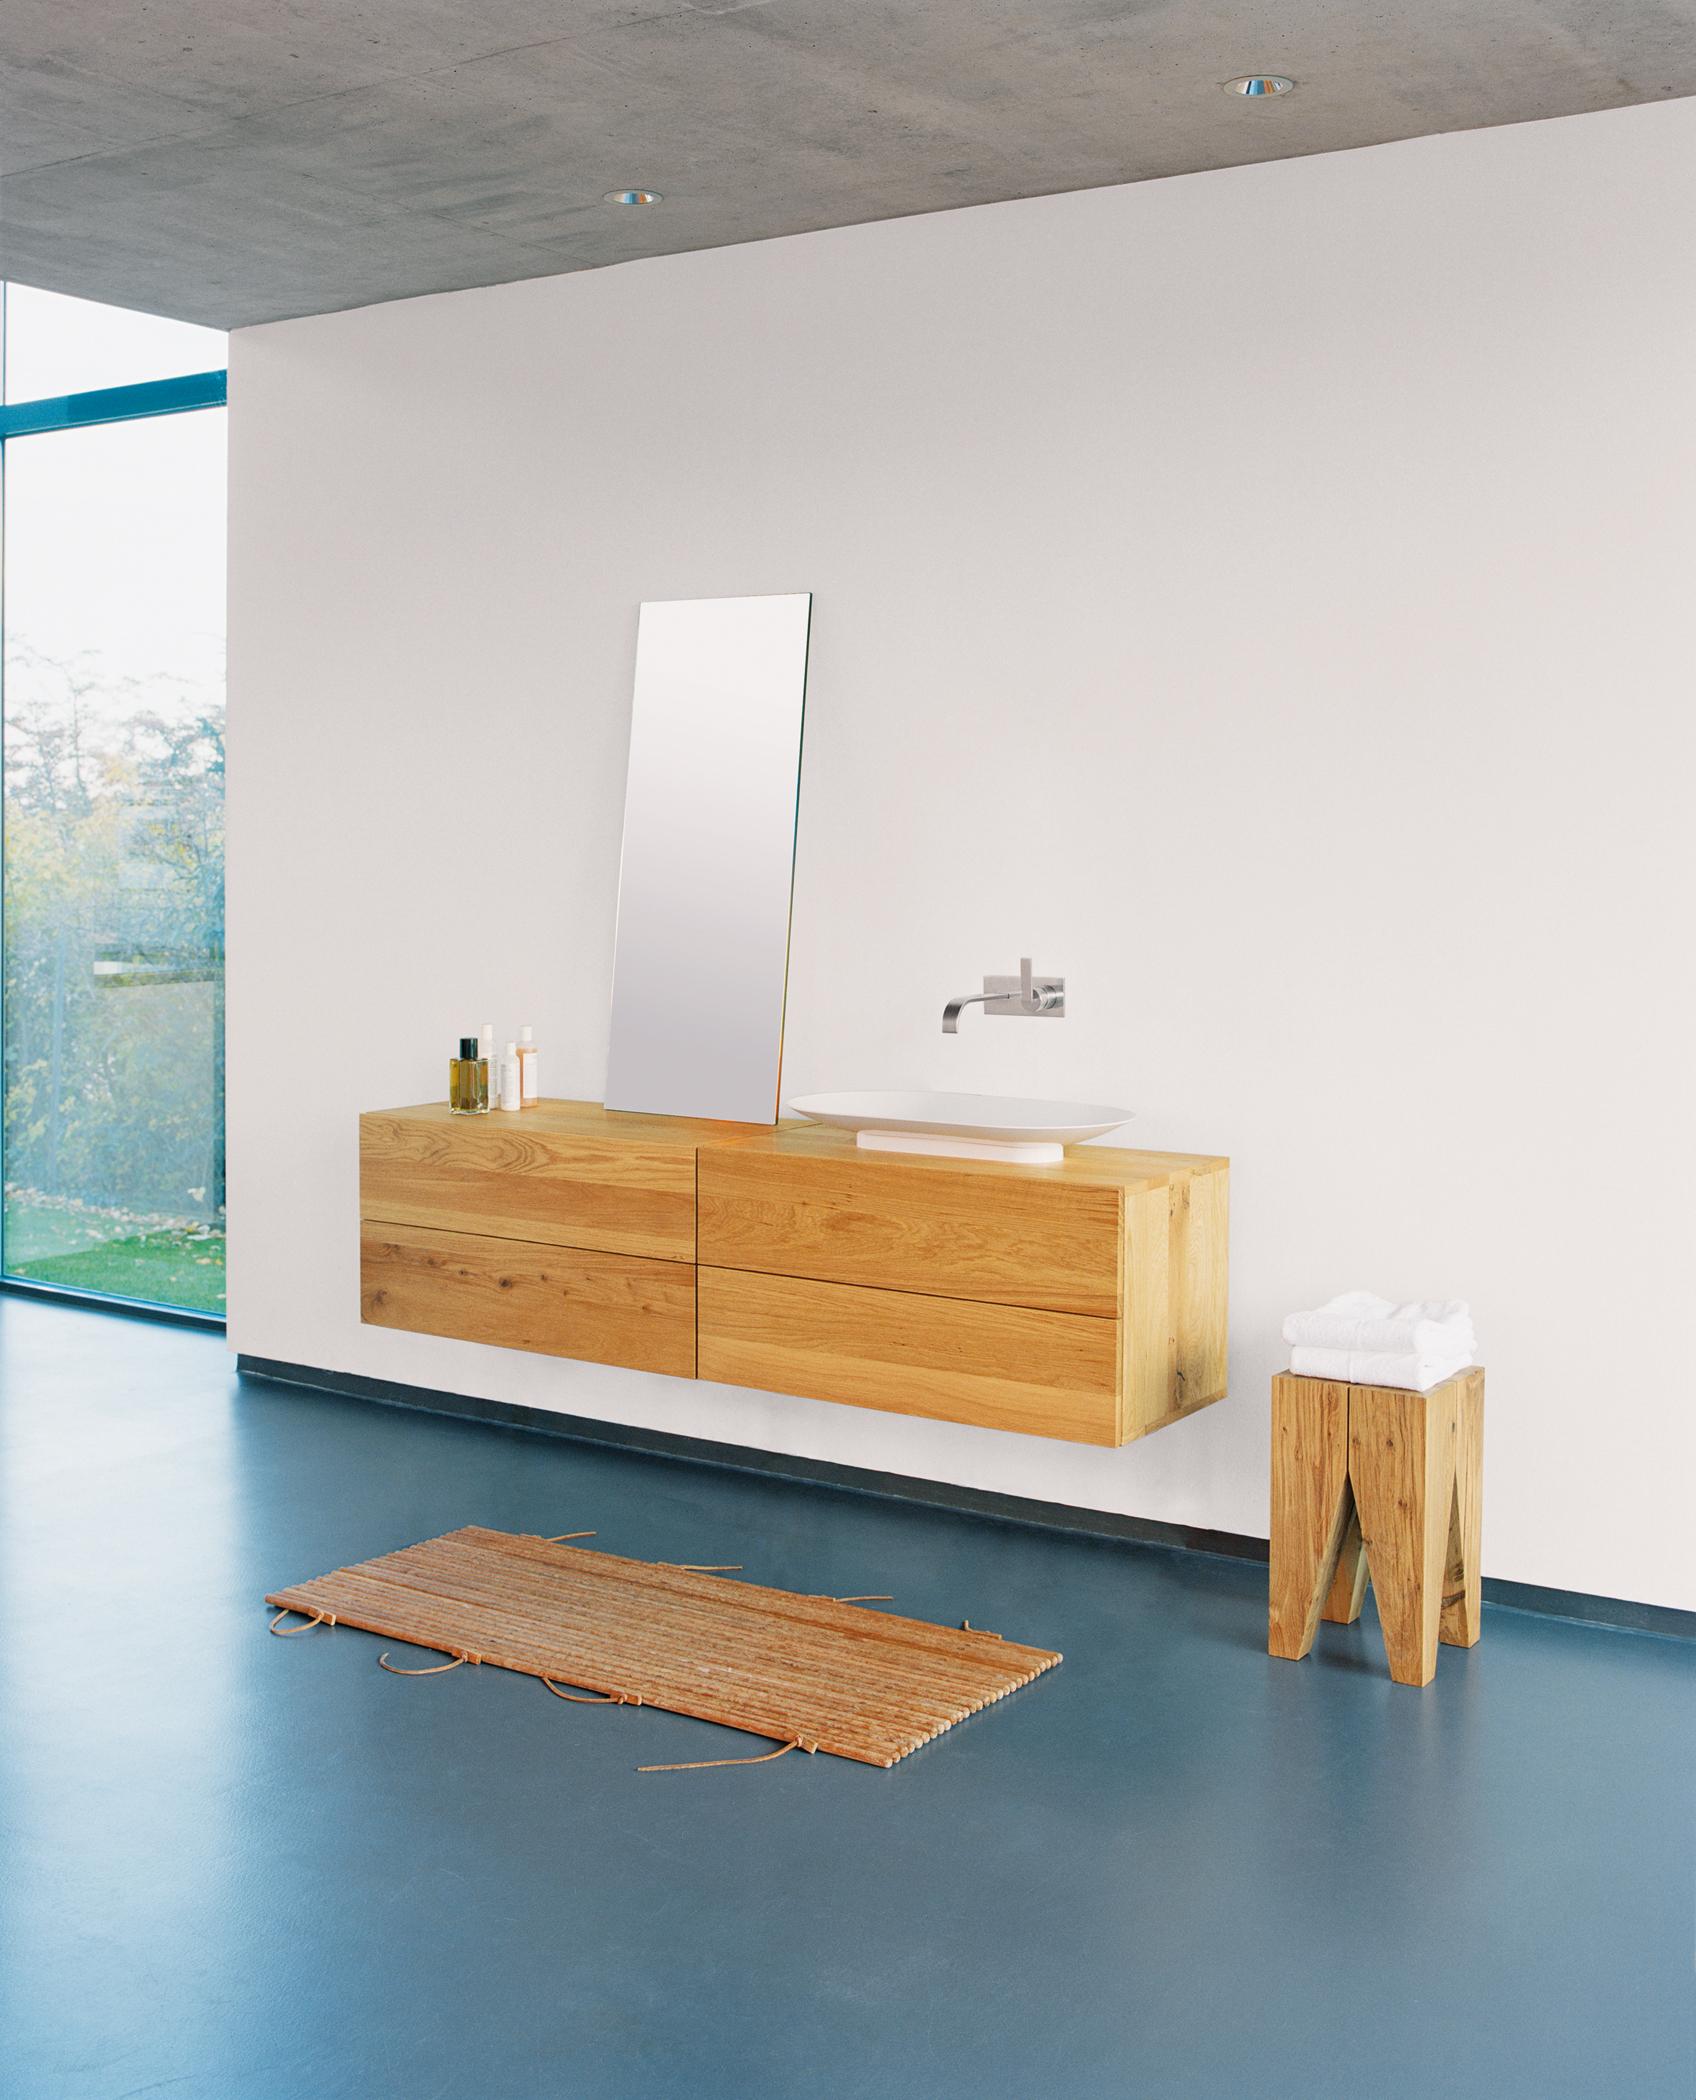 Minimalismus auf großem Raum #hocker #bad #teppich #spiegel #waschbecken #minimalismus #holzhocker #waschkommode ©E15